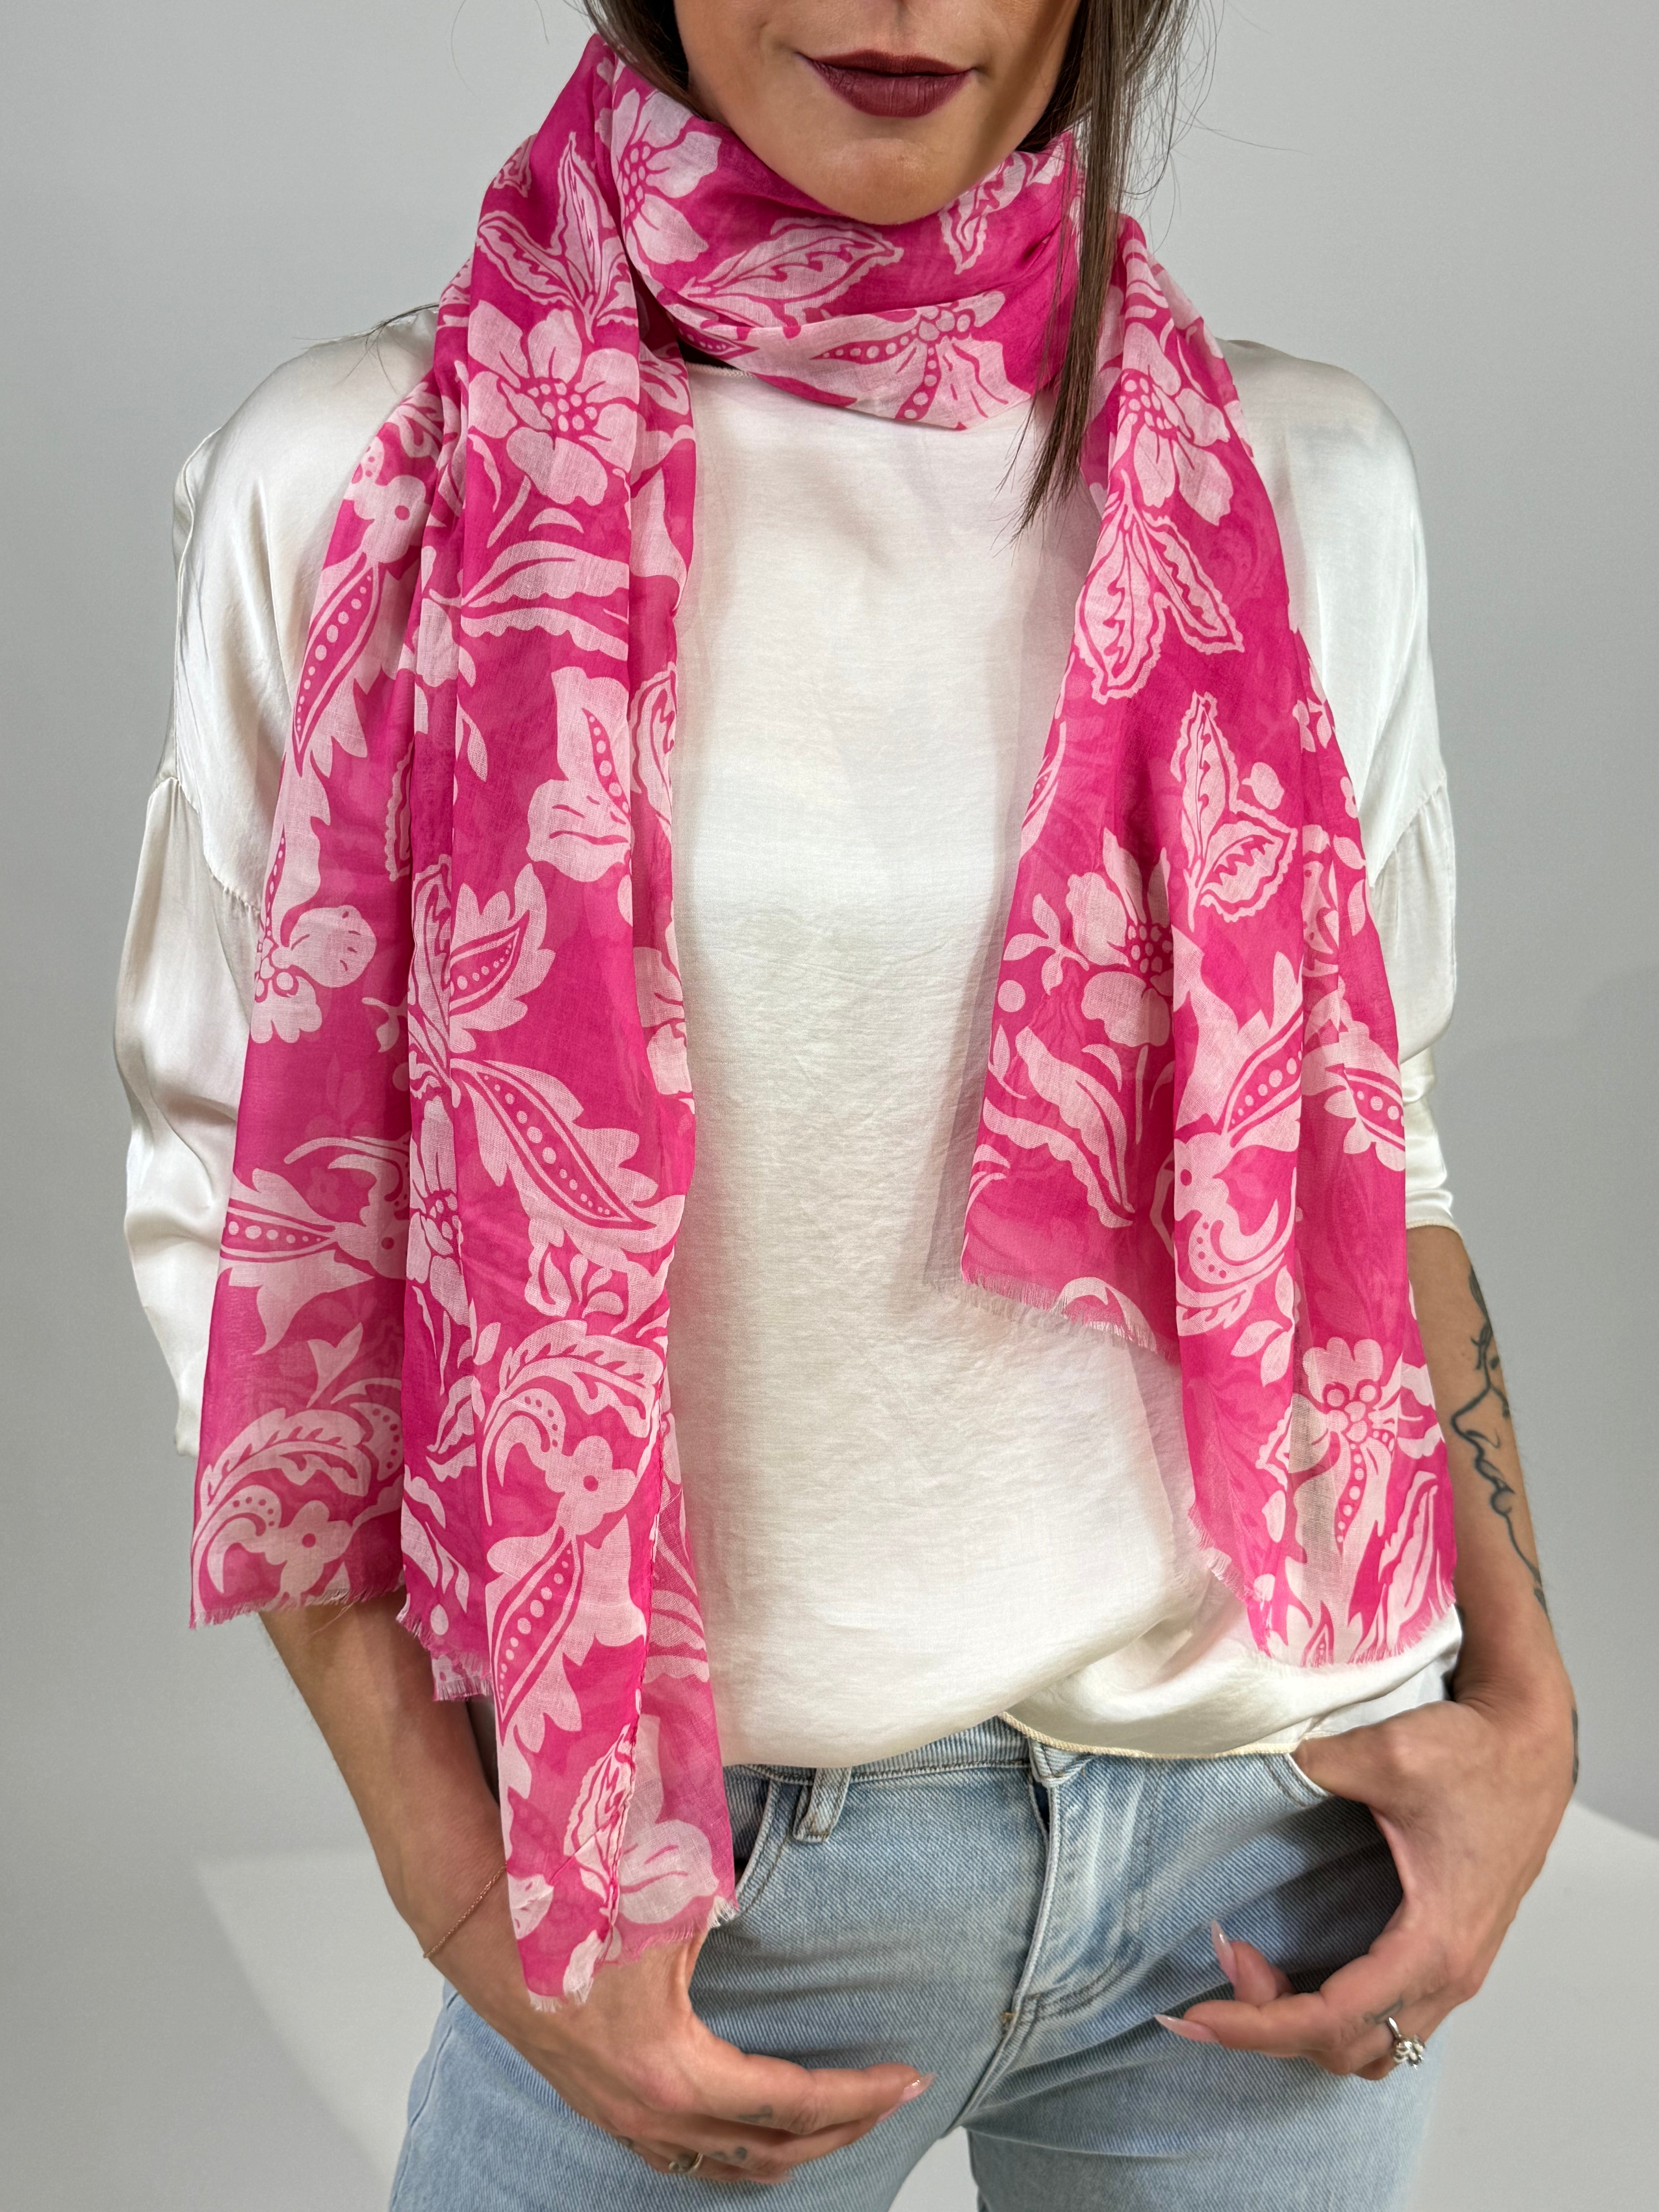 Sciarpa foulard in viscosa Susy Mix FANTASIA FLOREALE